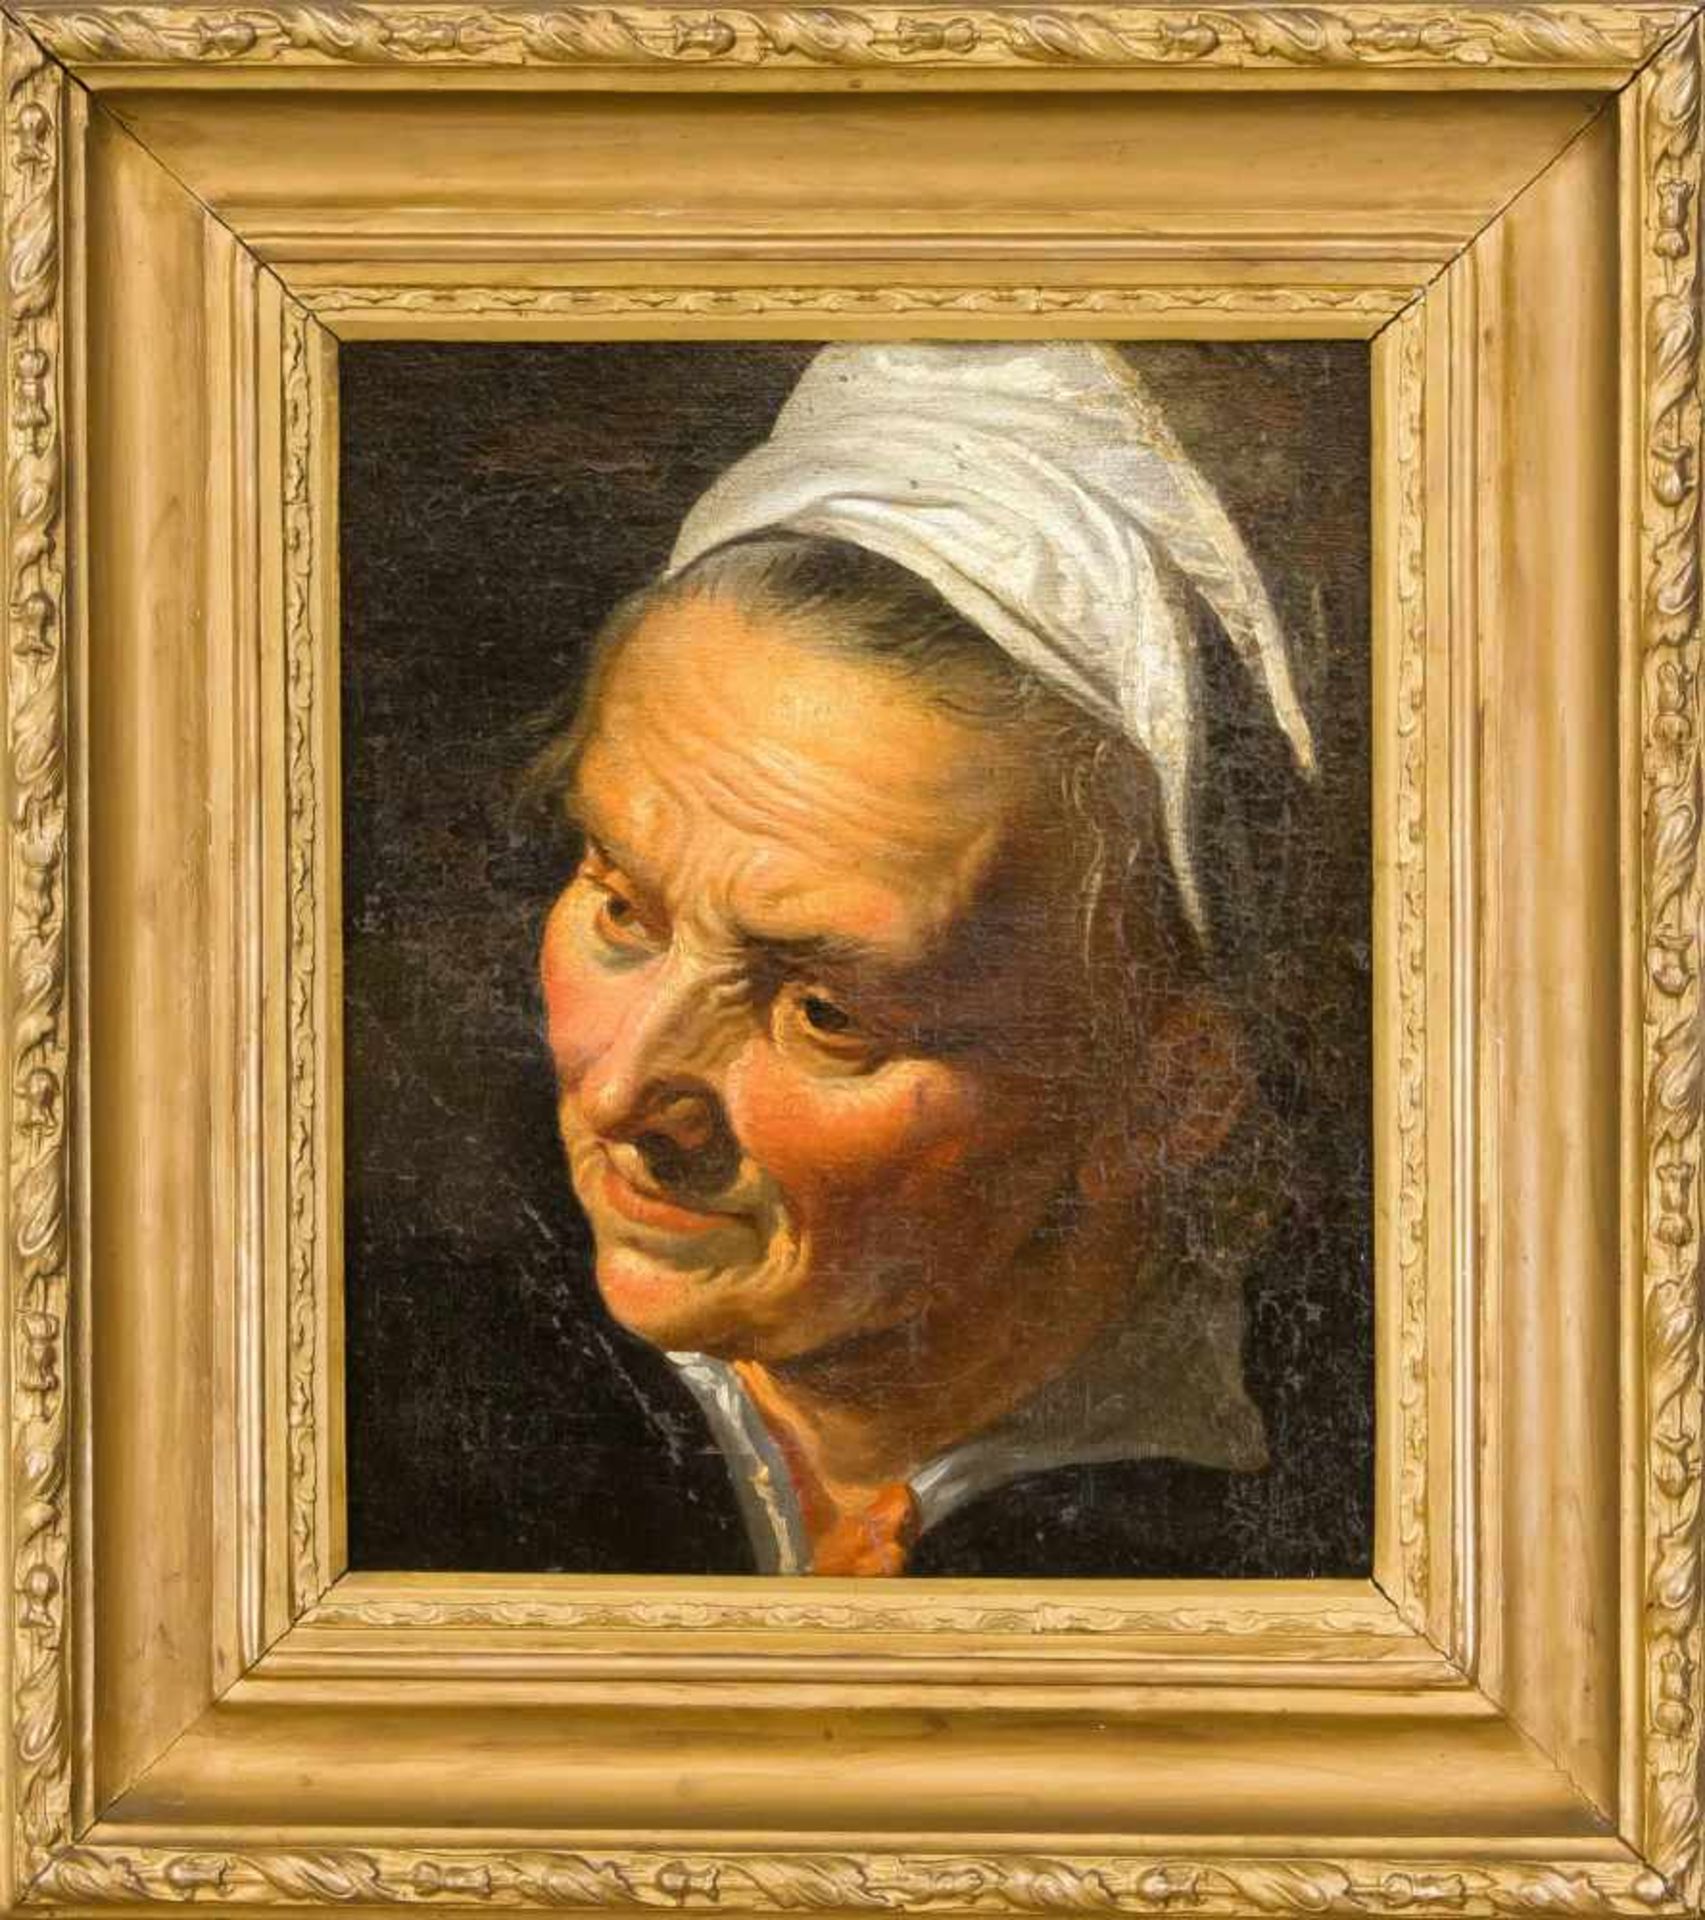 Bildnismaler des 18. Jh., Portrait einer älteren Frau nach links blickend, Öl auf Lwd. auf